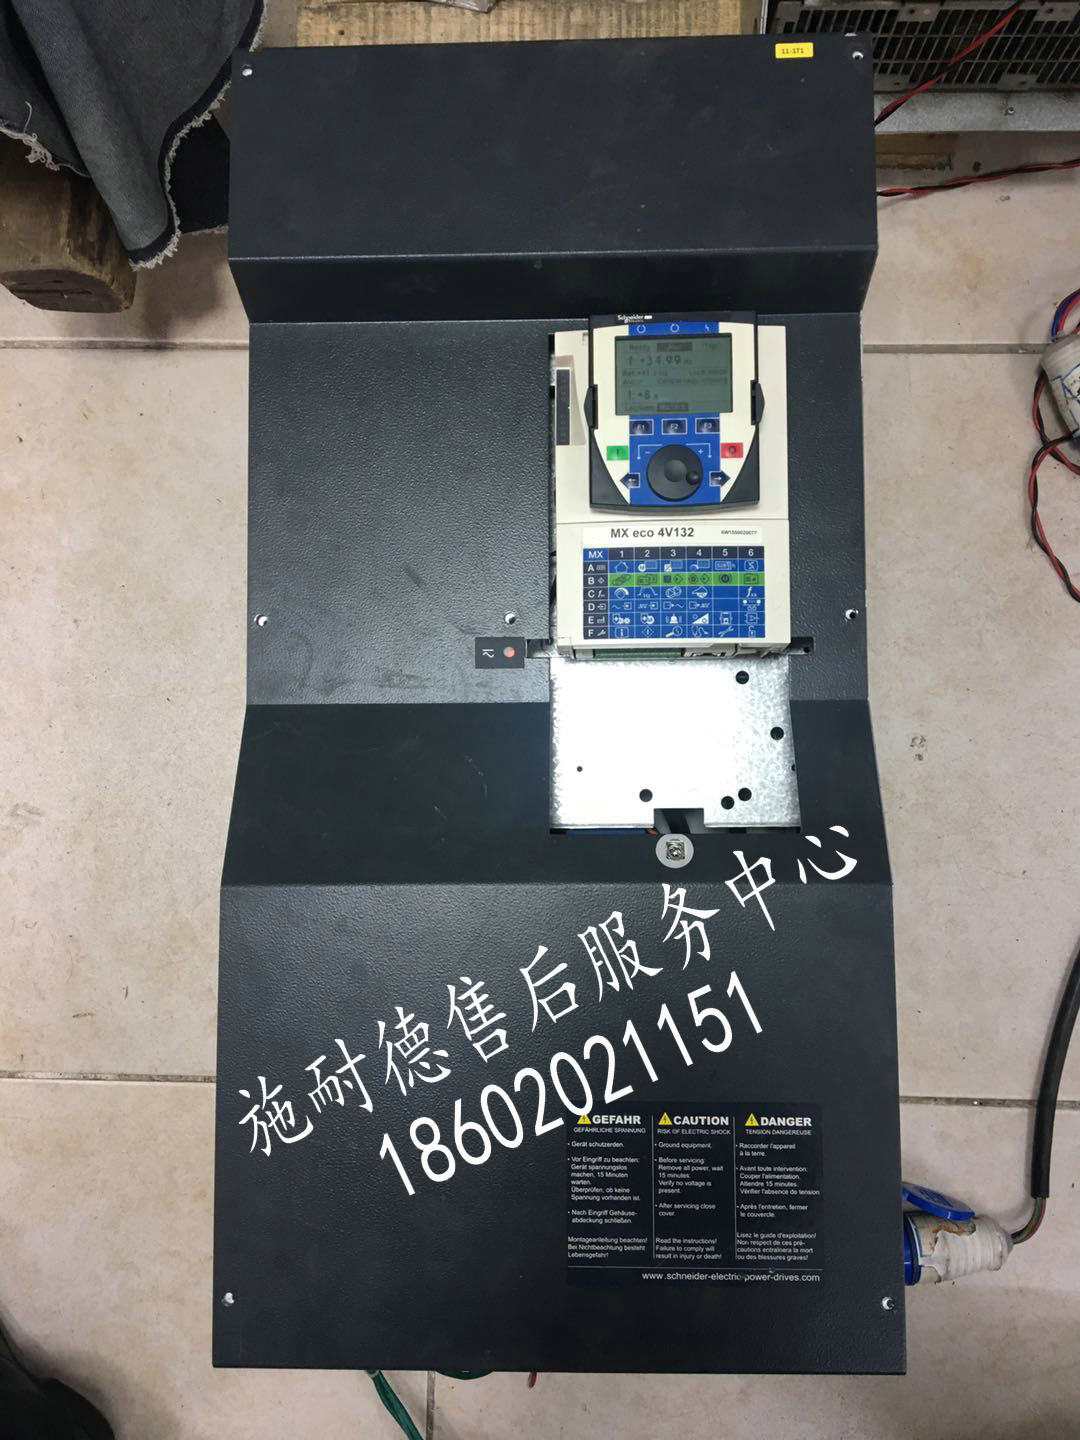 珠海市香洲区海瑞克盾构机PDRIVE eco 4V110变频器维修